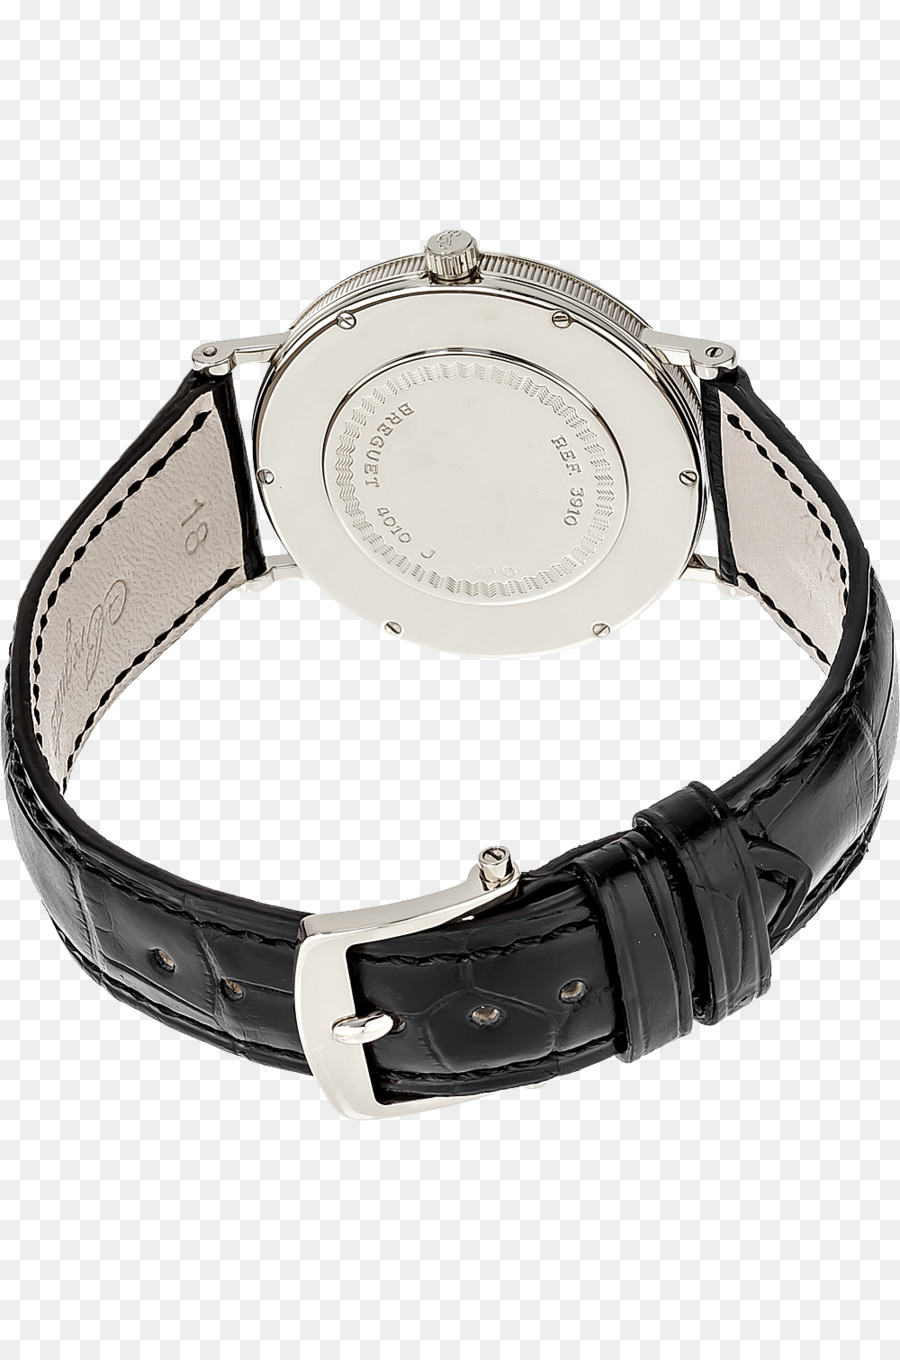 Analog Uhr Armband Titan Unternehmen - off white Marke zu sehen